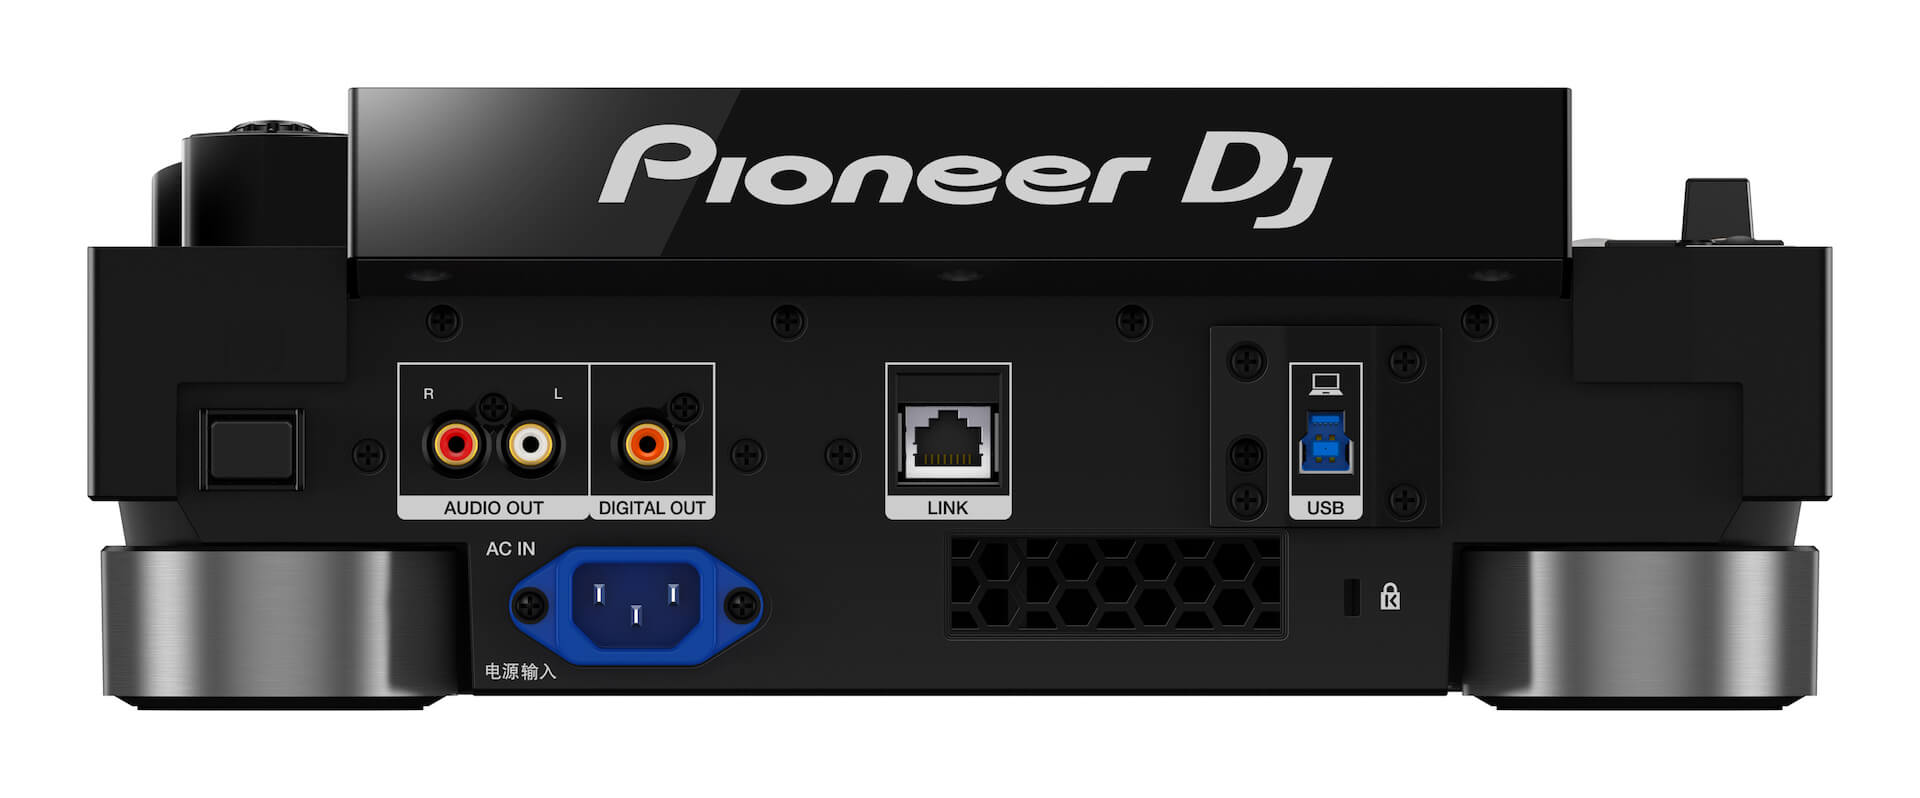 Pioneer DJからCDJシリーズ最新モデル「CDJ-3000」が登場！限定モデル「CDJ-3000-W」も tech200910_cdj_3000_4